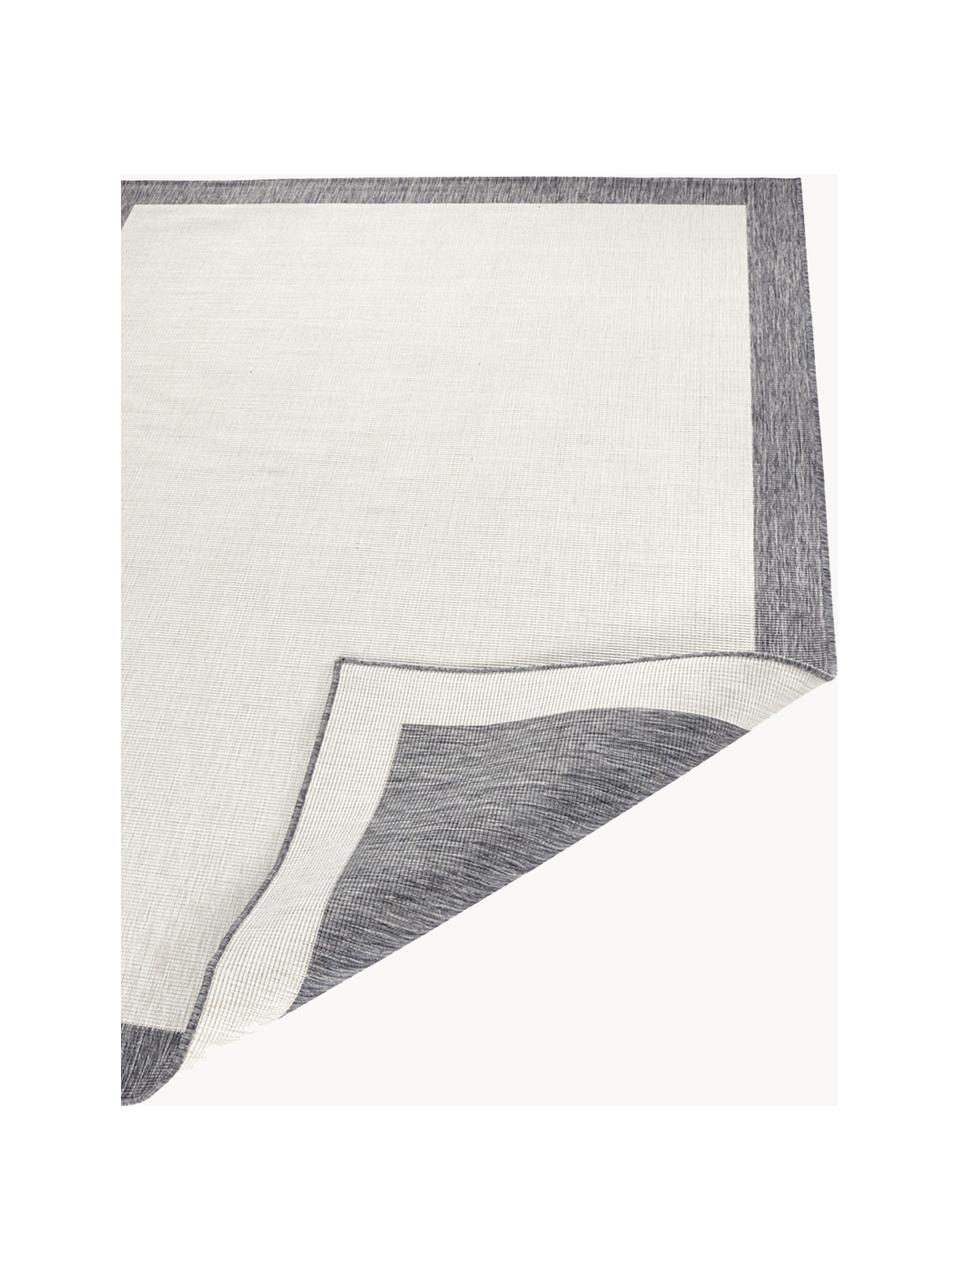 Tappeto reversibile da interno-esterno Panama, Bianco latte, grigio, P 230 x L 160 cm